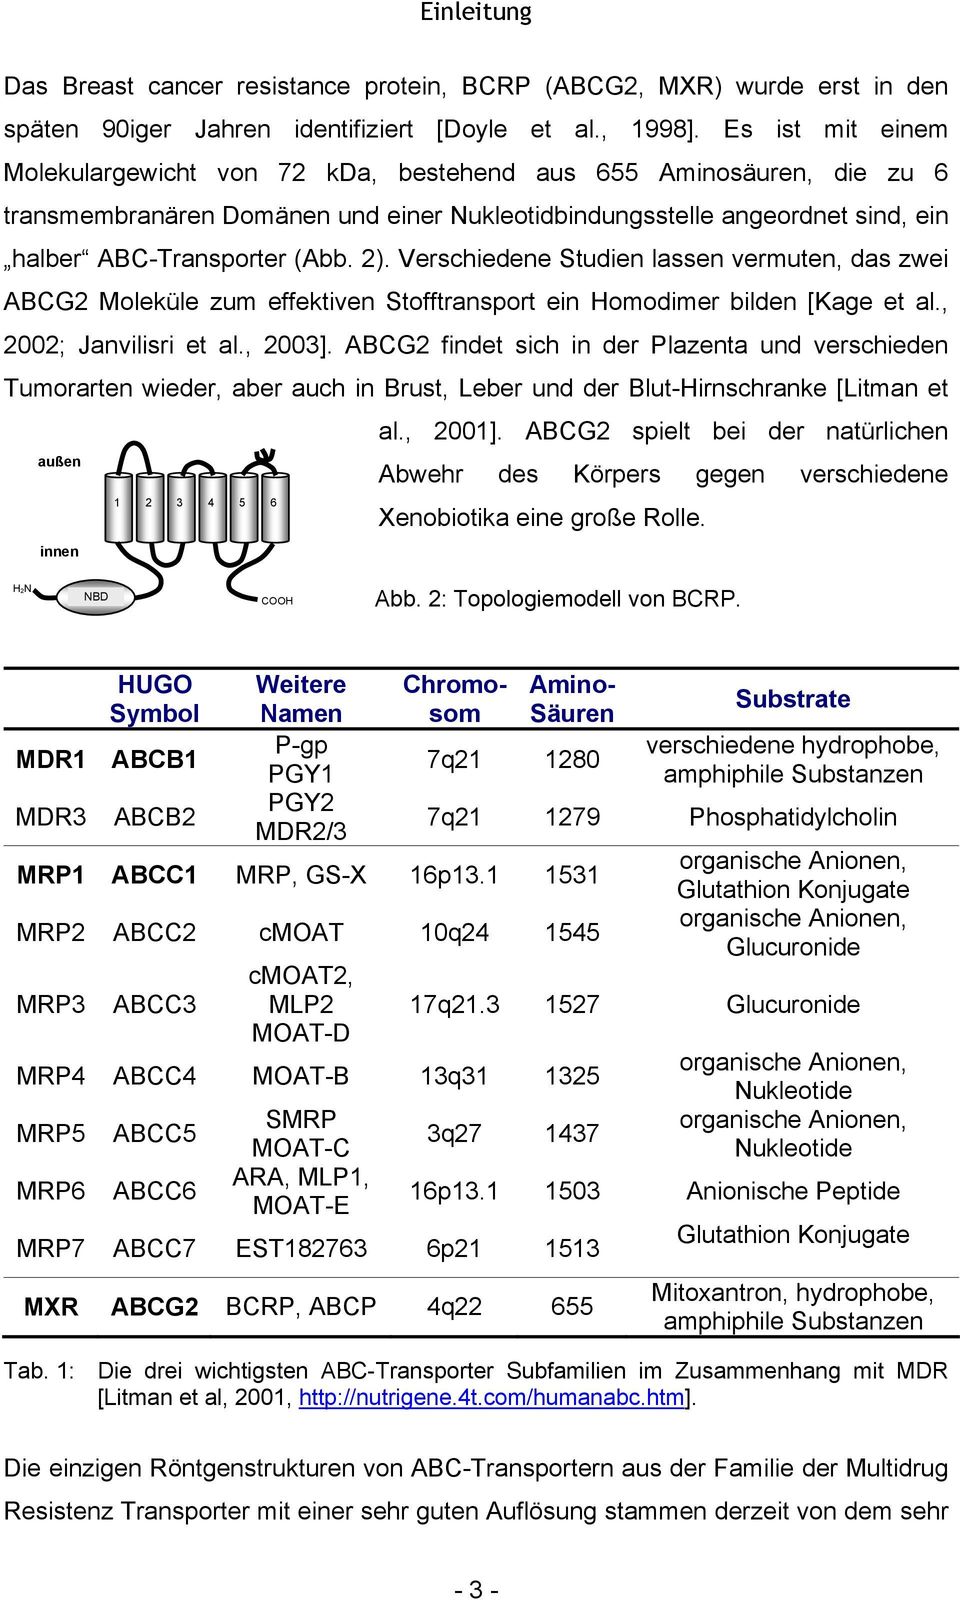 Verschiedene Studien lassen vermuten, das zwei ABCG2 Moleküle zum effektiven Stofftransport ein omodimer bilden [Kage et al., 2002; Janvilisri et al., 2003].